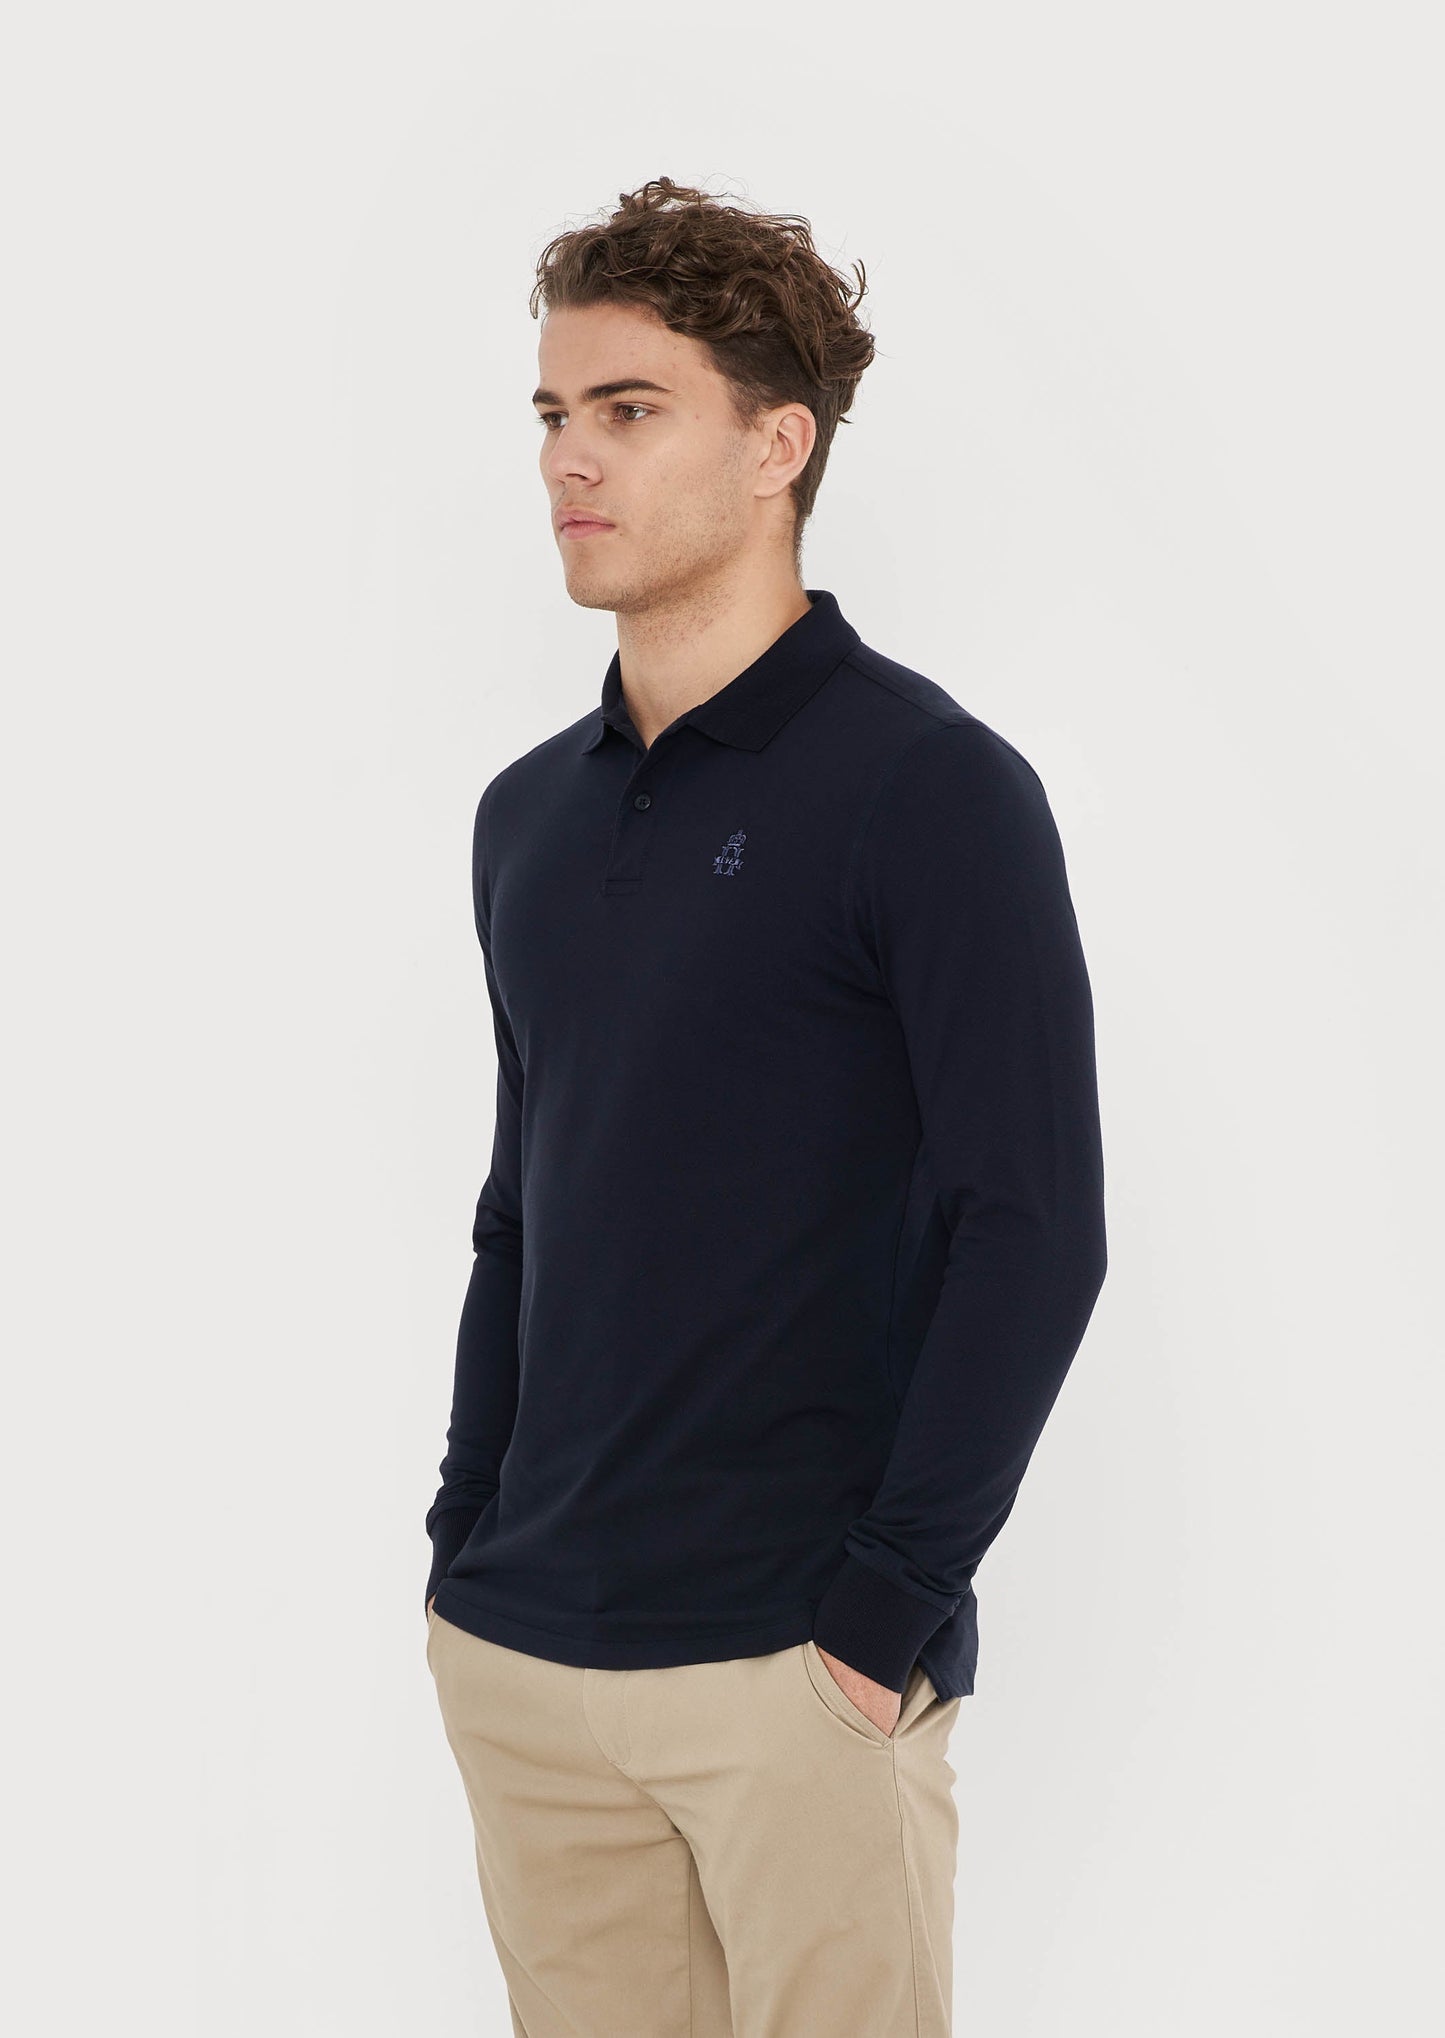 Hurlingham Polo Long Sleeve Polo Shirt - Navy